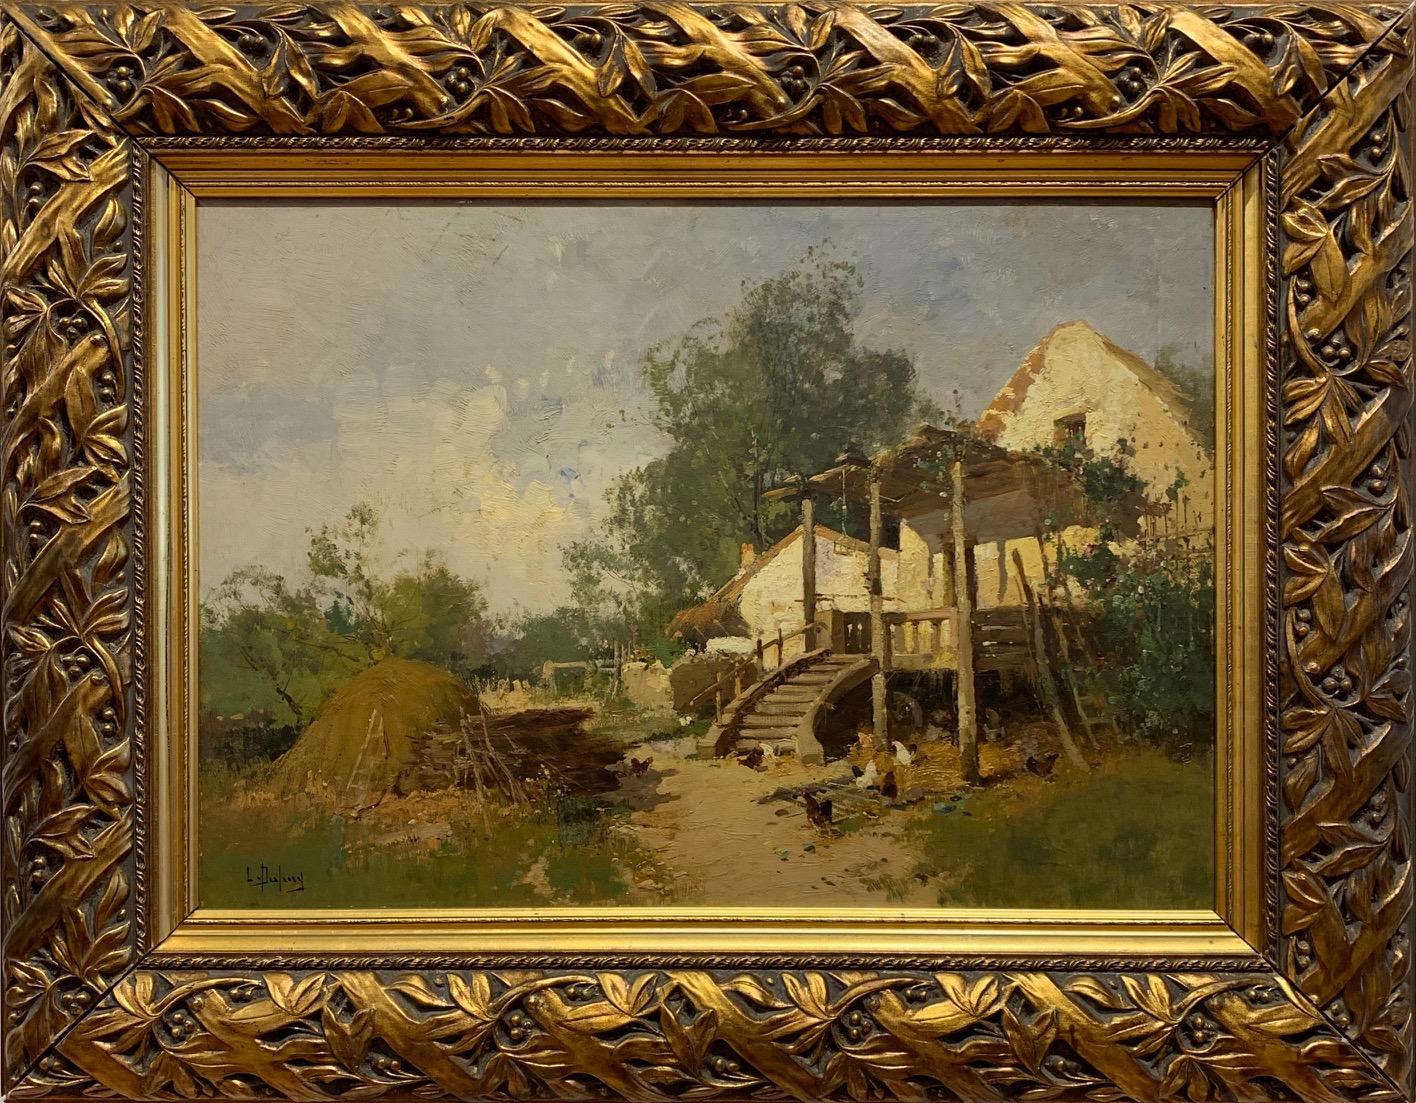 Gîte à la campagne, Impressionist 19th Century - Painting by Eugene Galien-Laloue